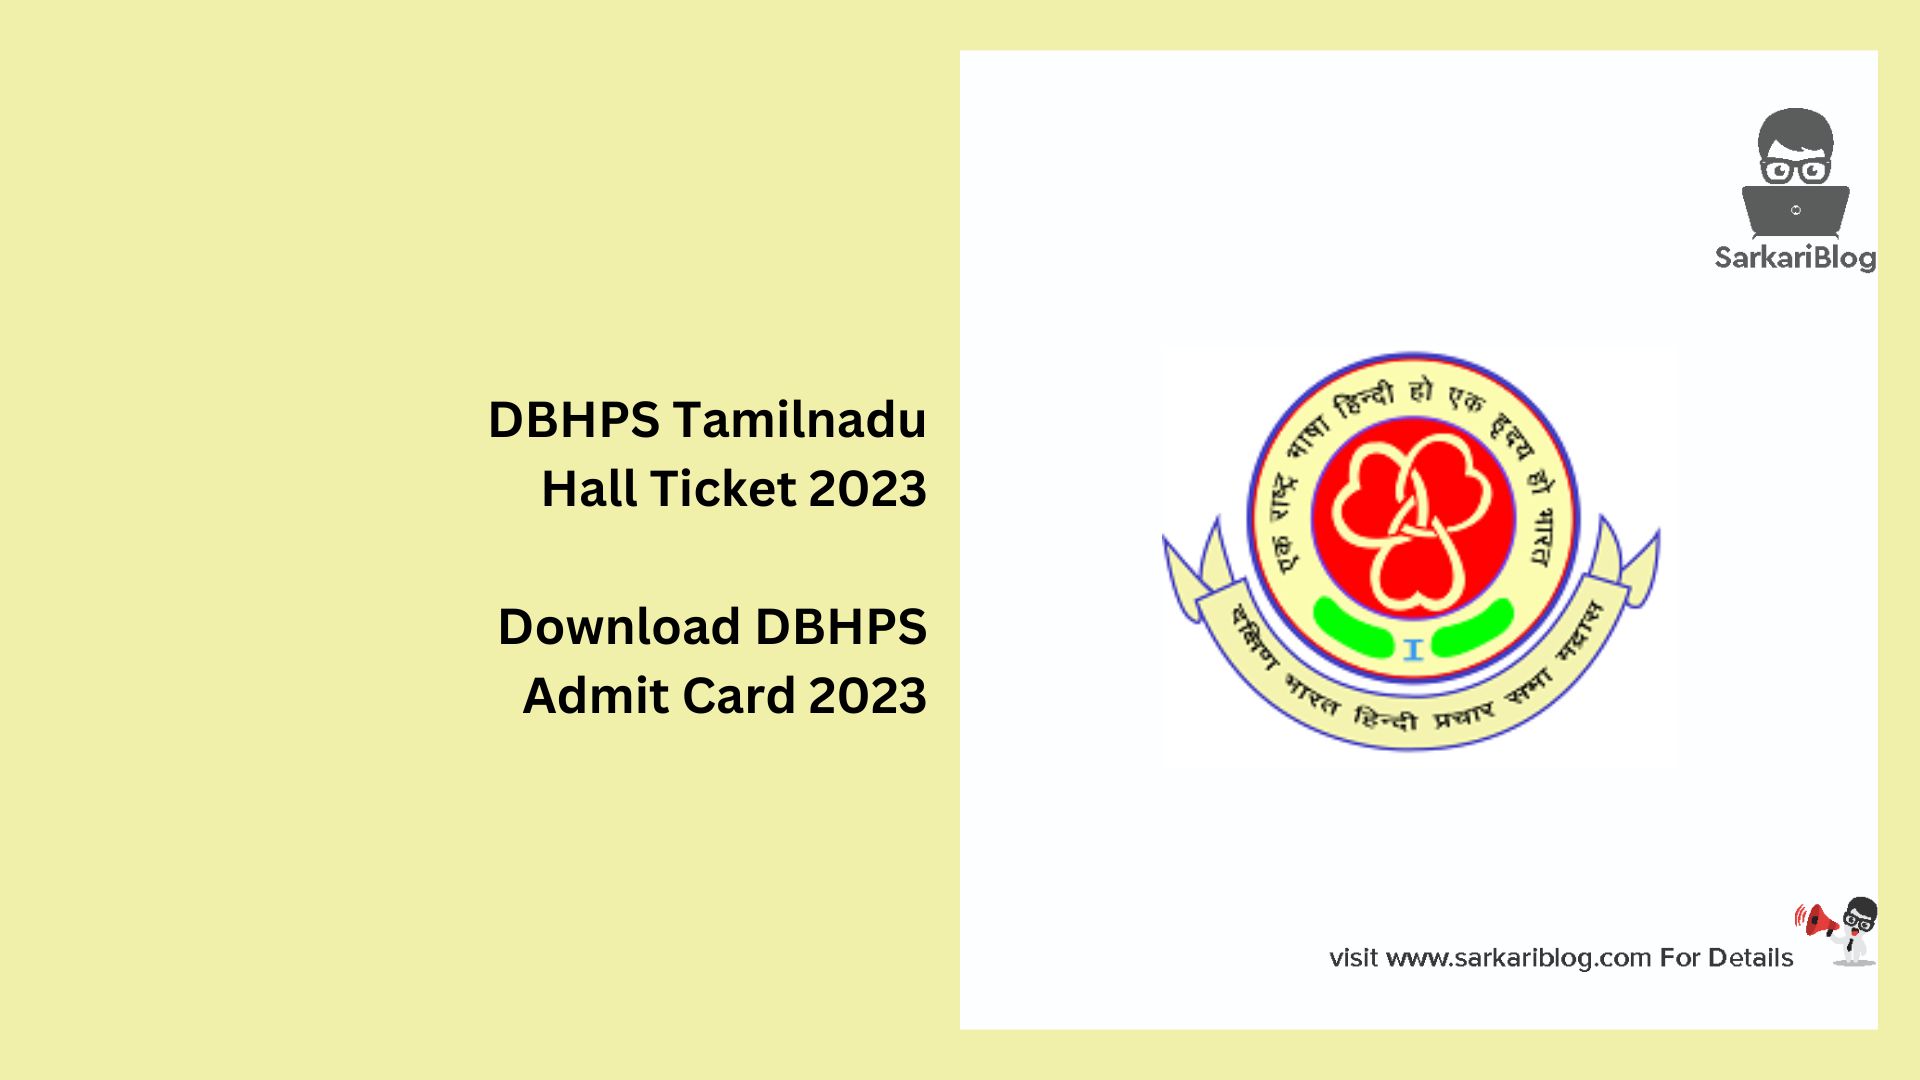 DBHPS Tamilnadu Hall Ticket 2023